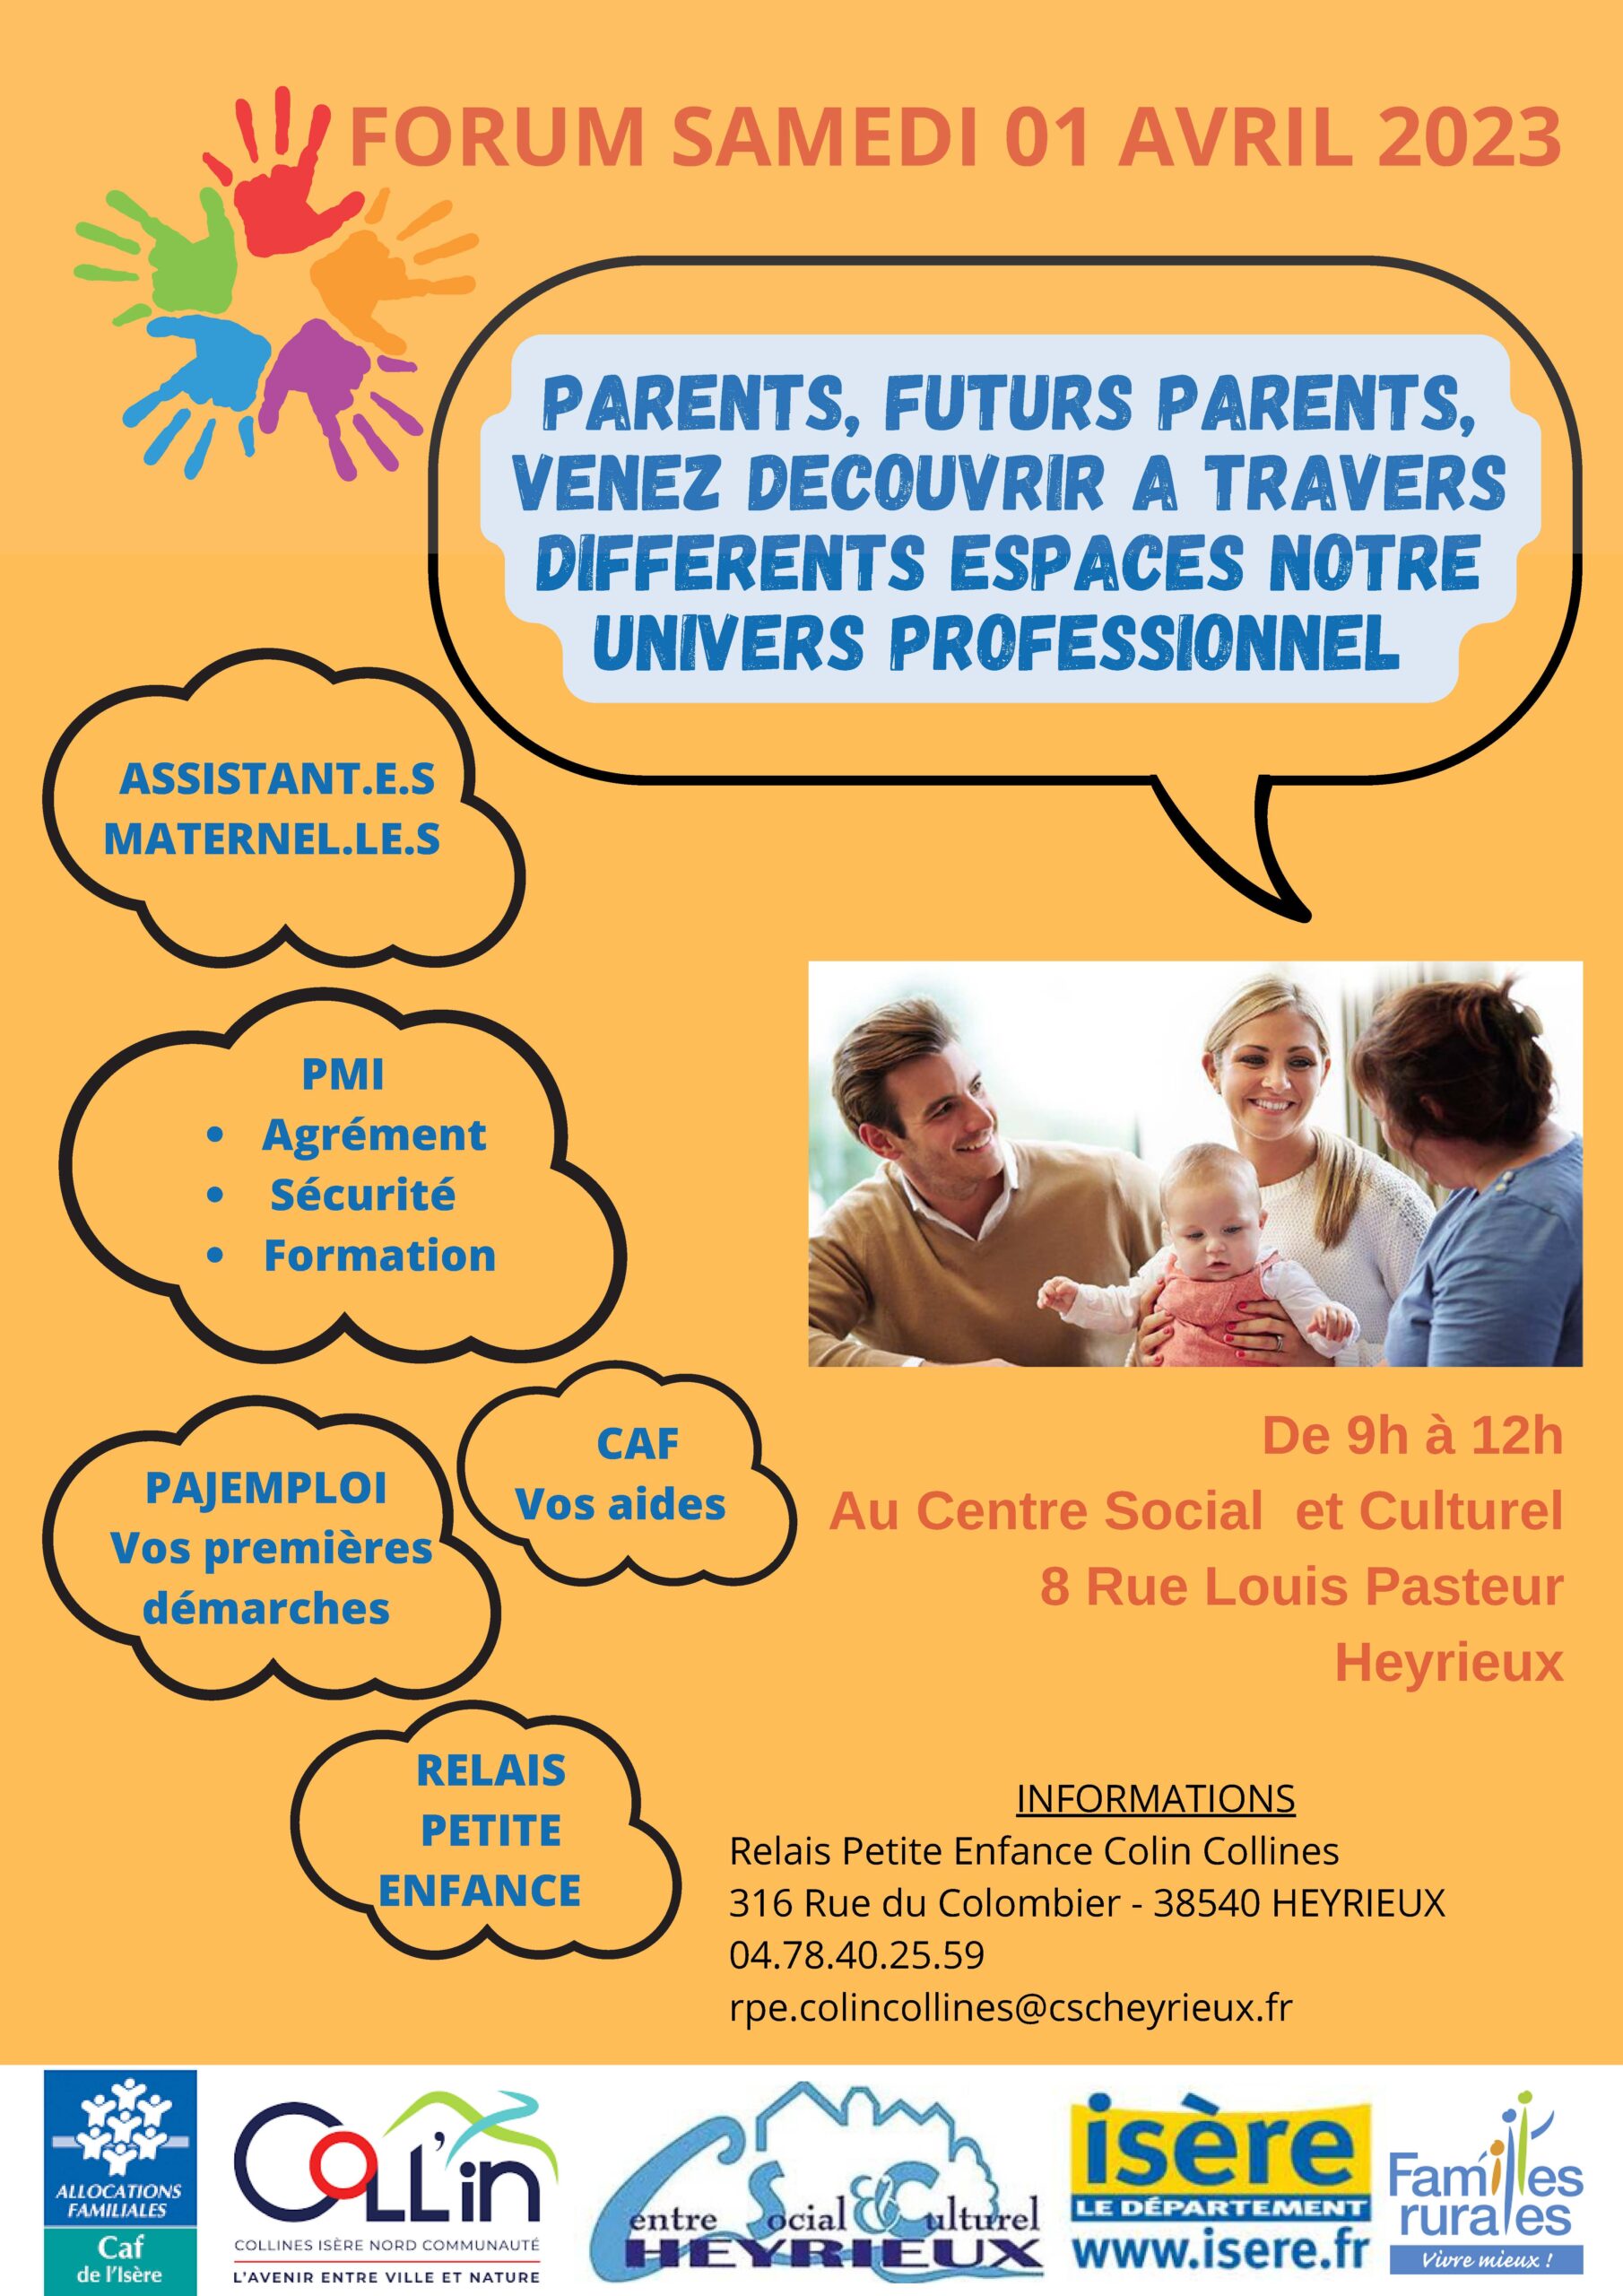 Image de Forum Parents/Futurs parents